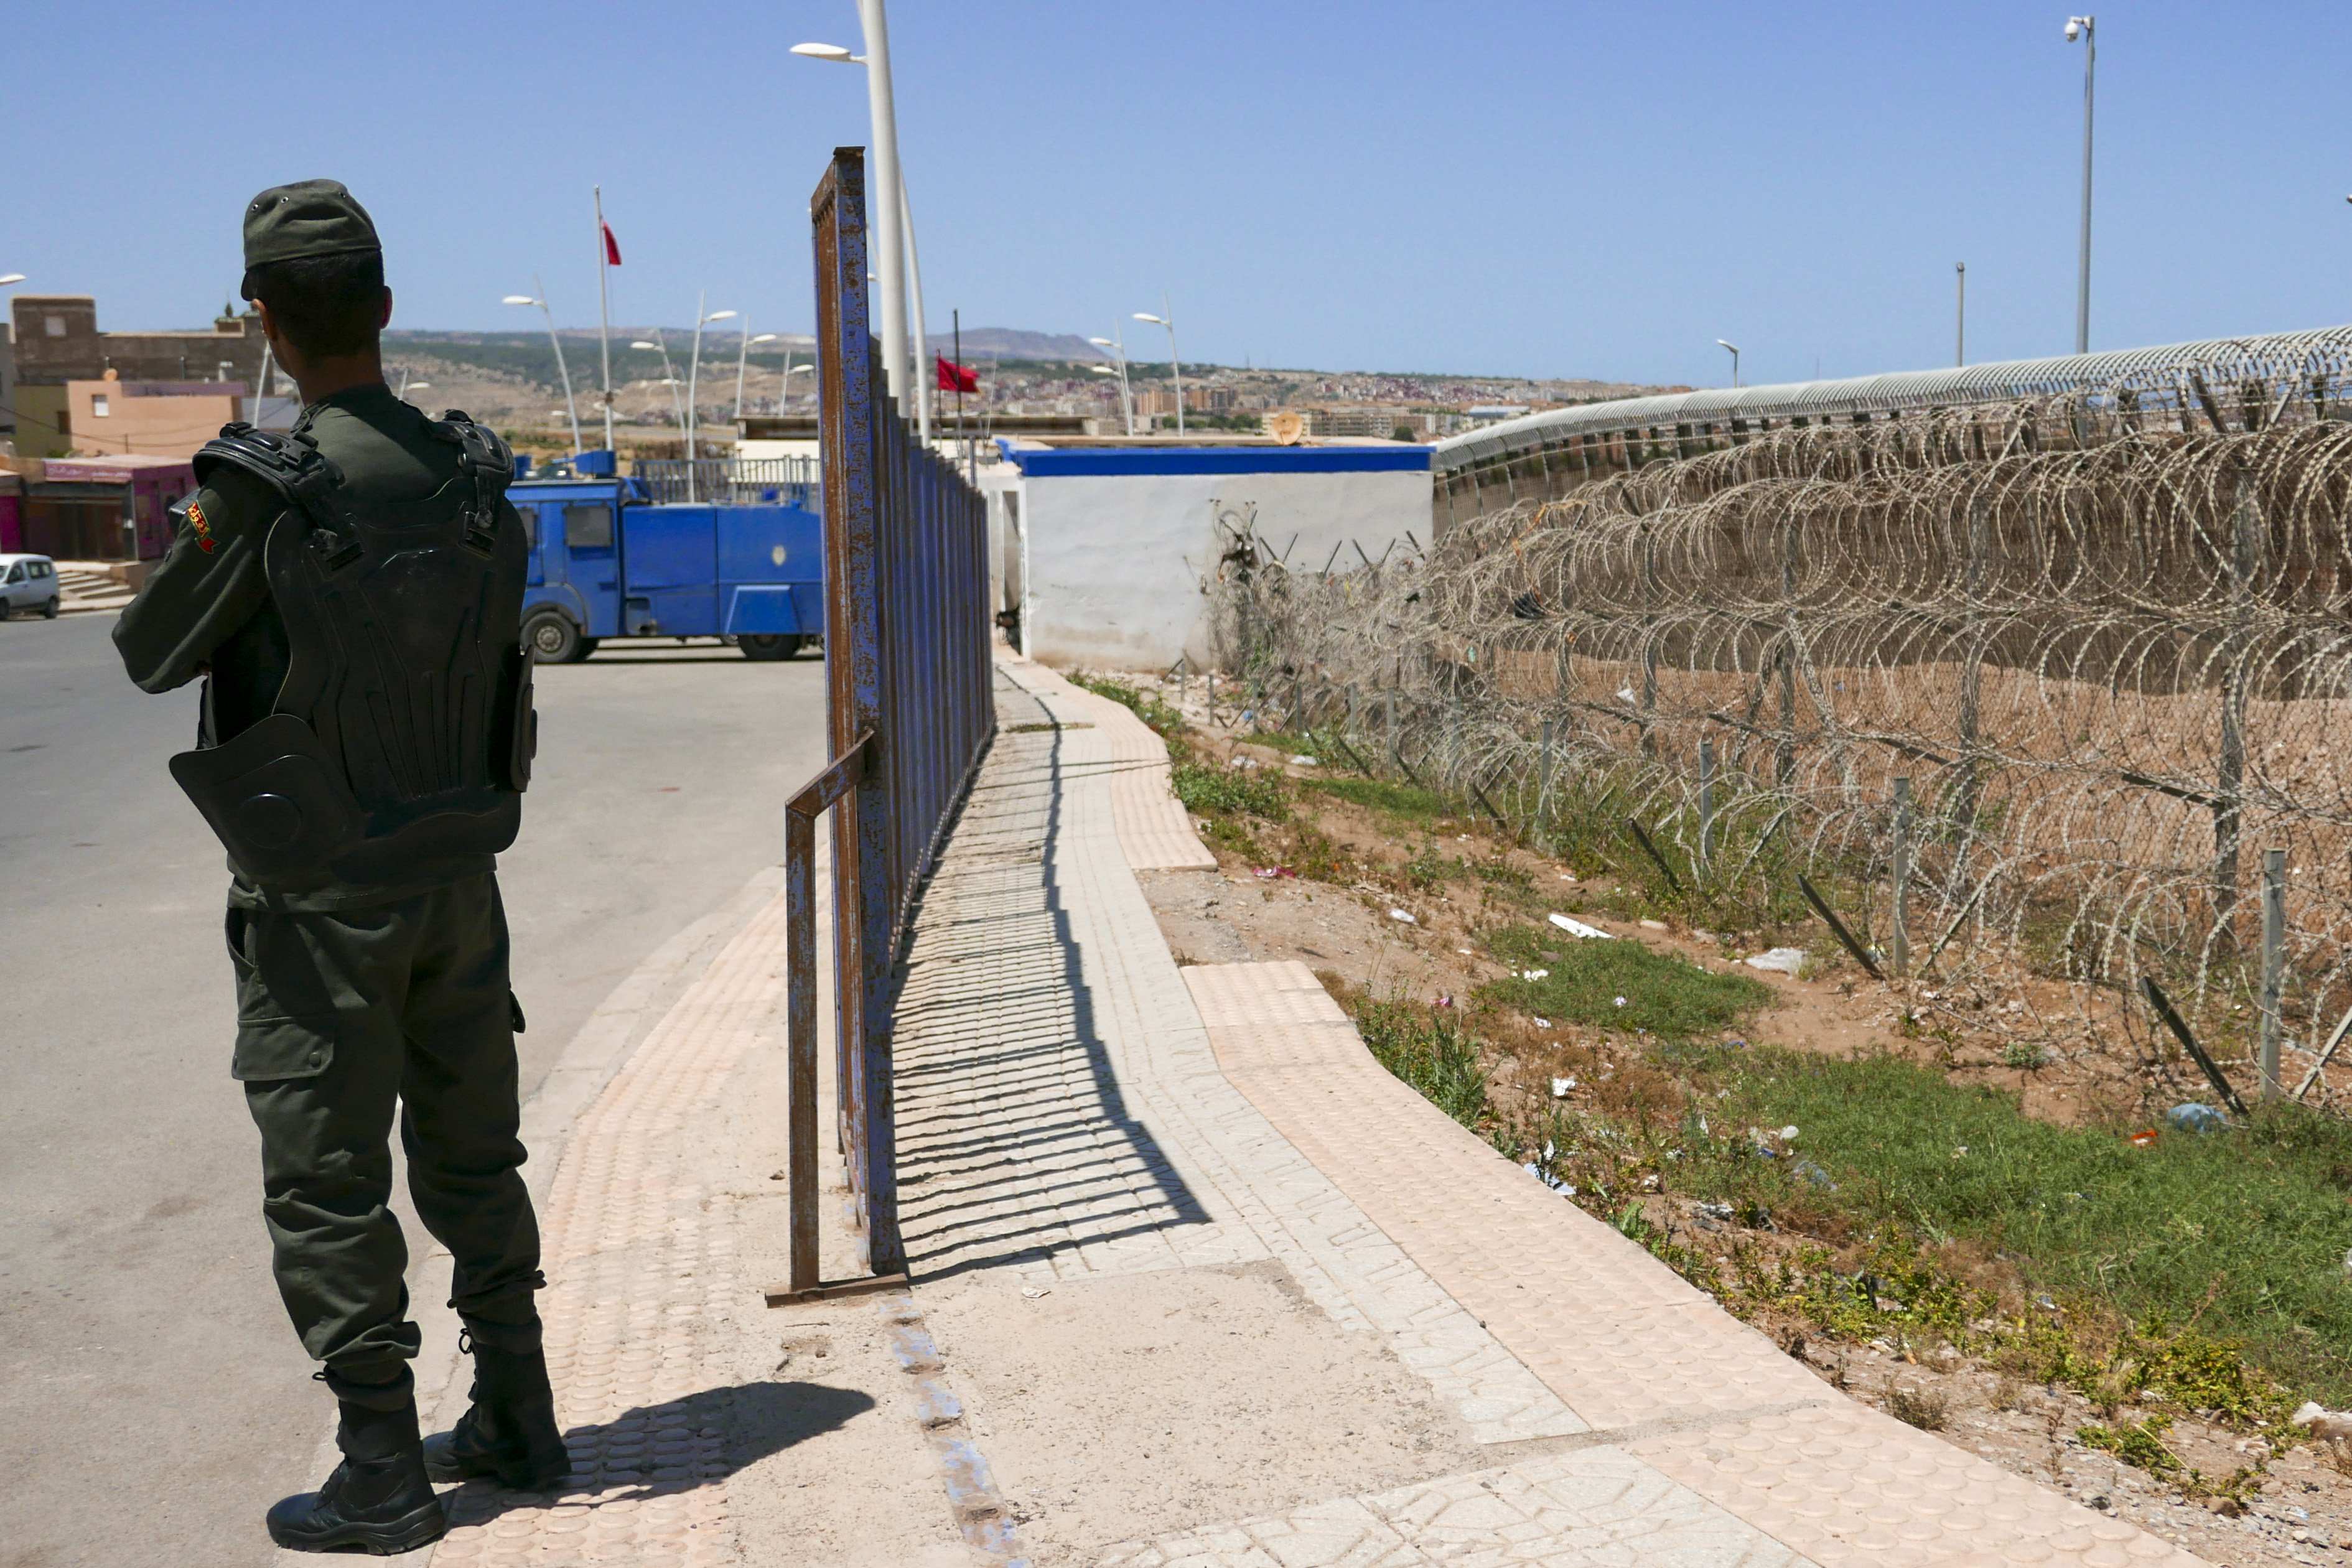 Polémica por la actuación de policías marroquíes en territorio español contra migrantes